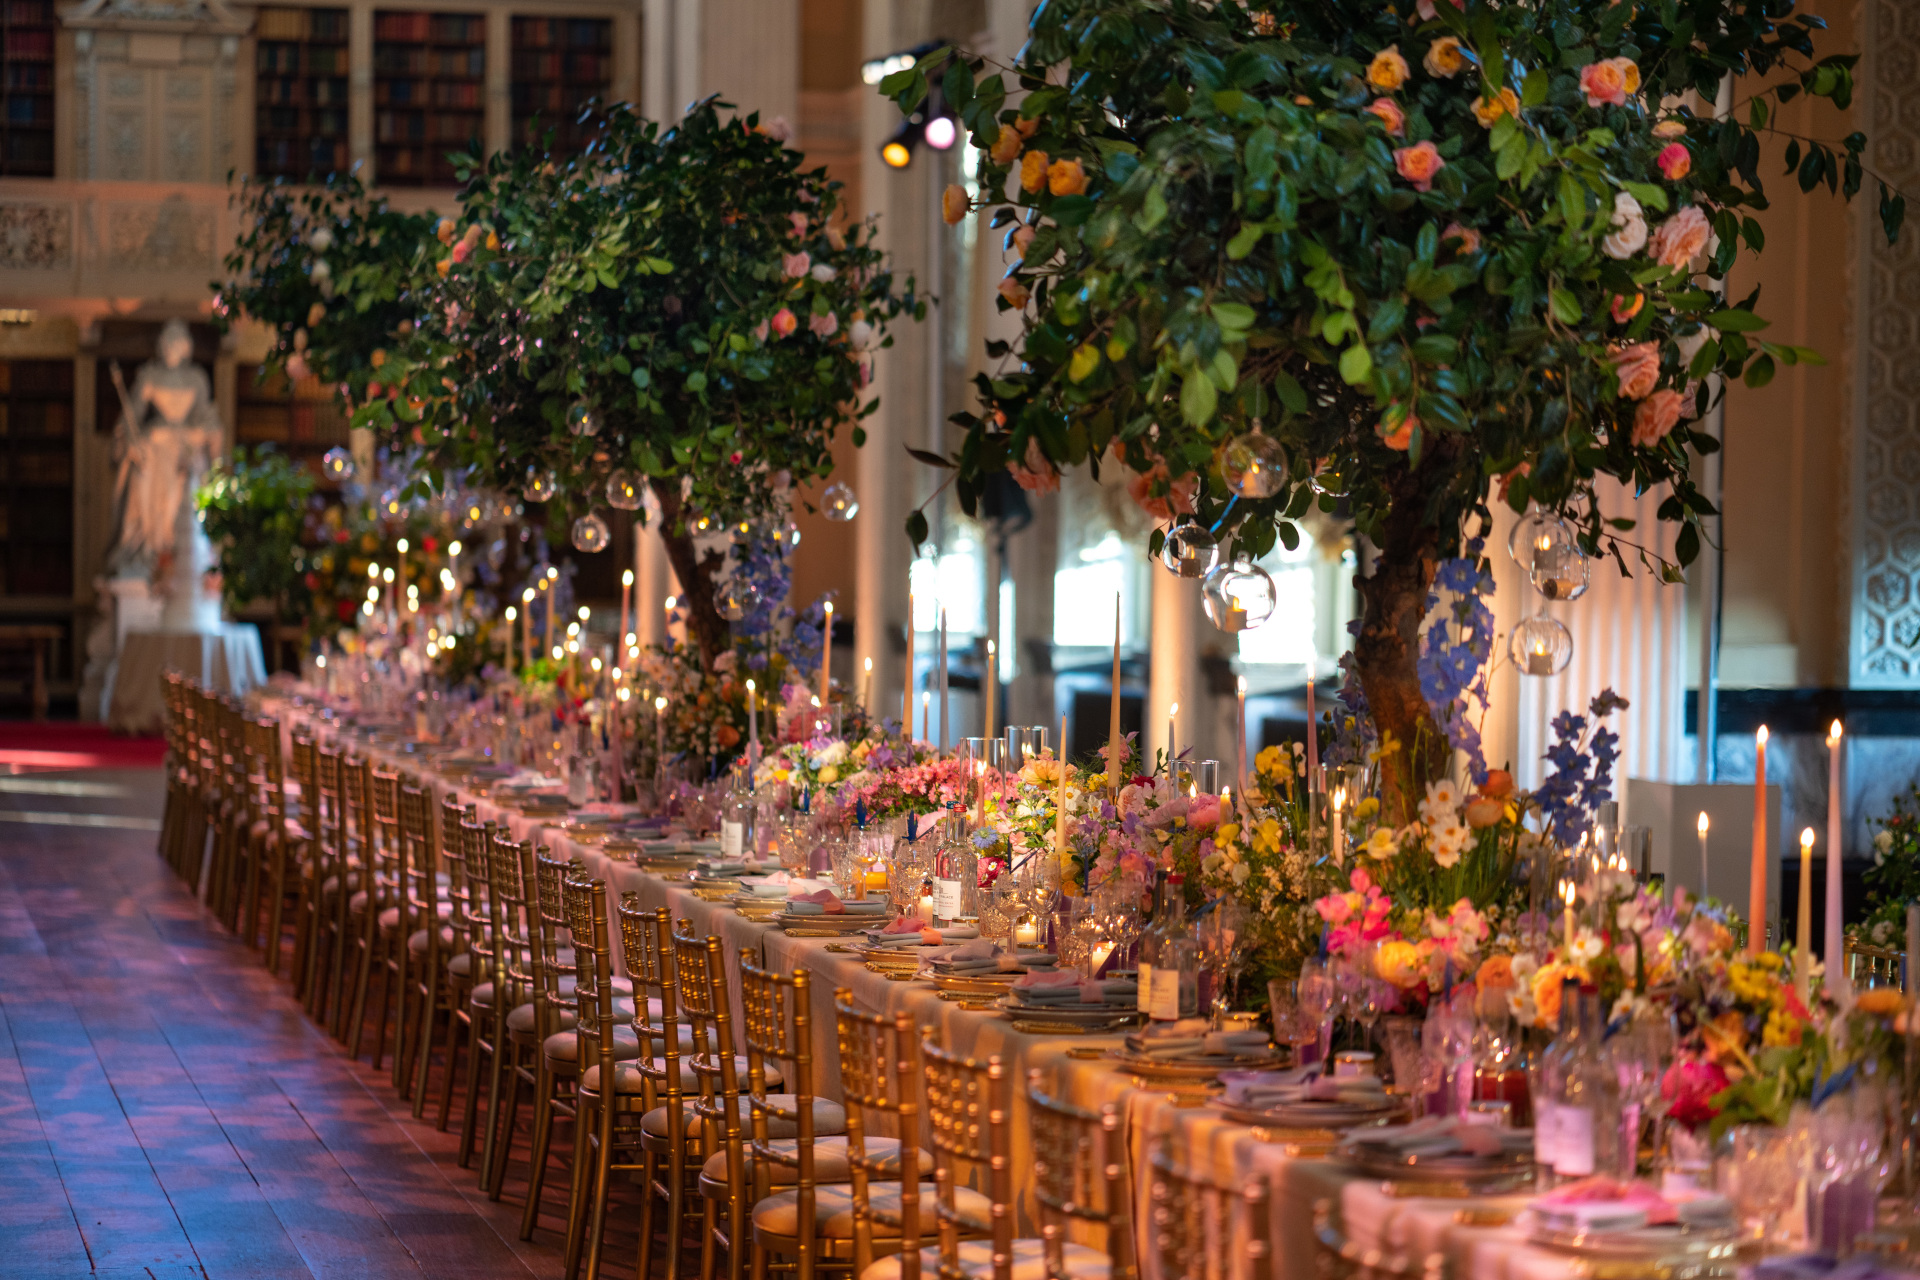 Table set with floral arrangements